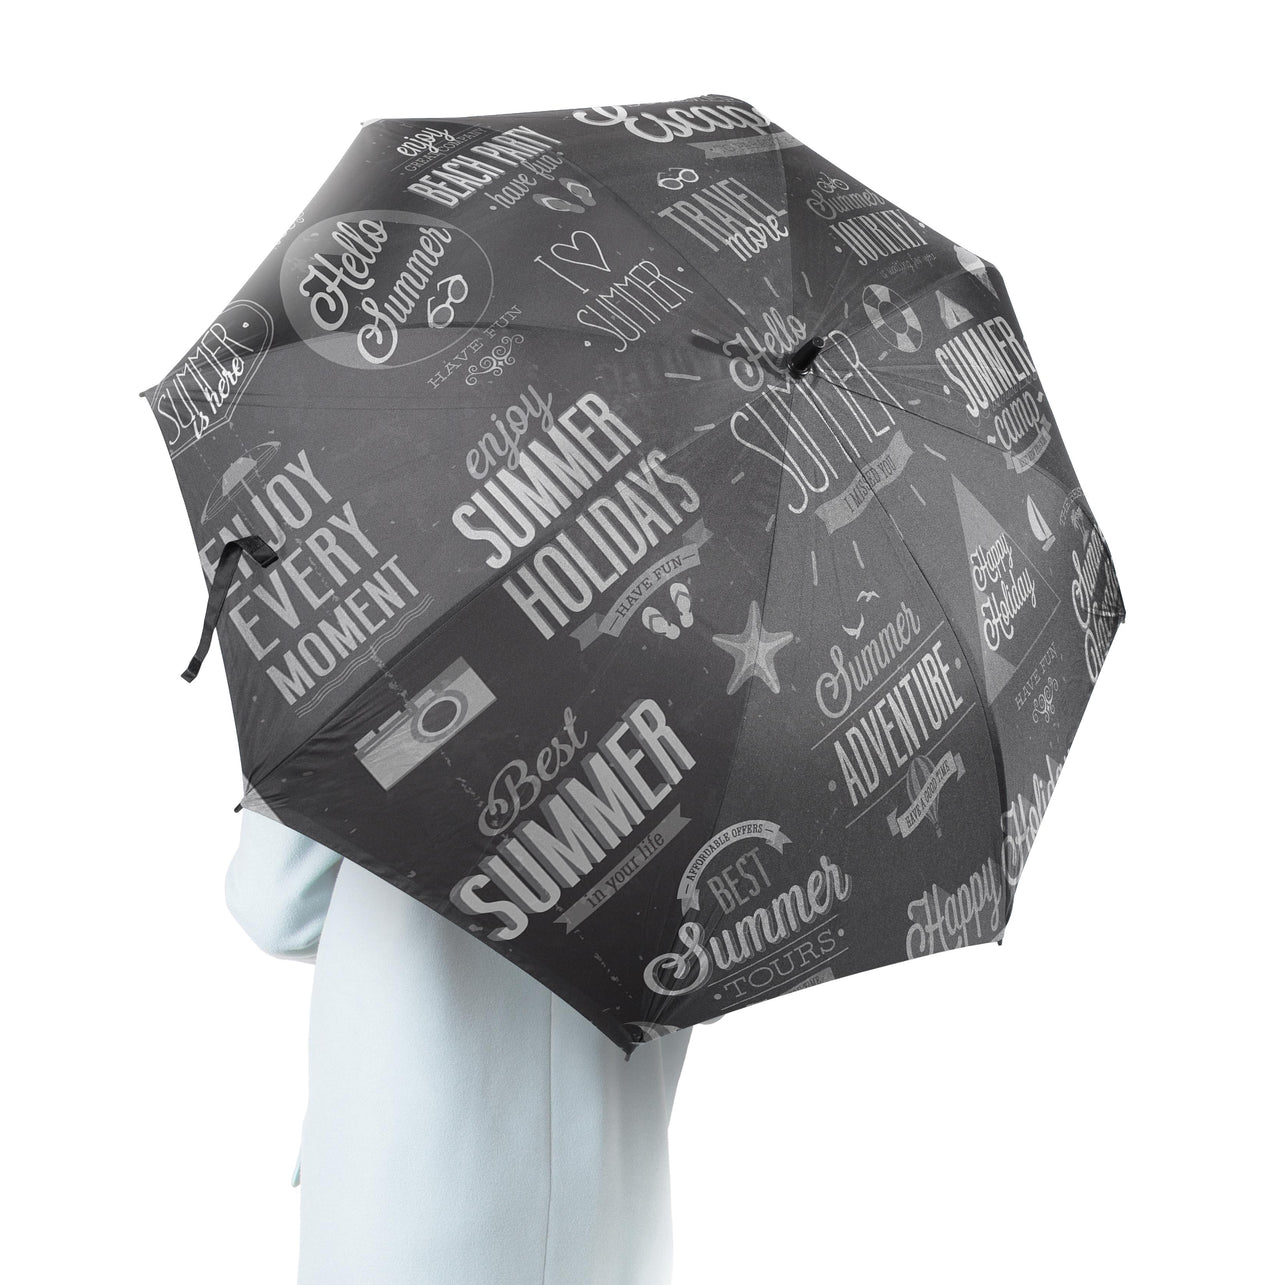 Black & White Super Travel Icons Designed Umbrella